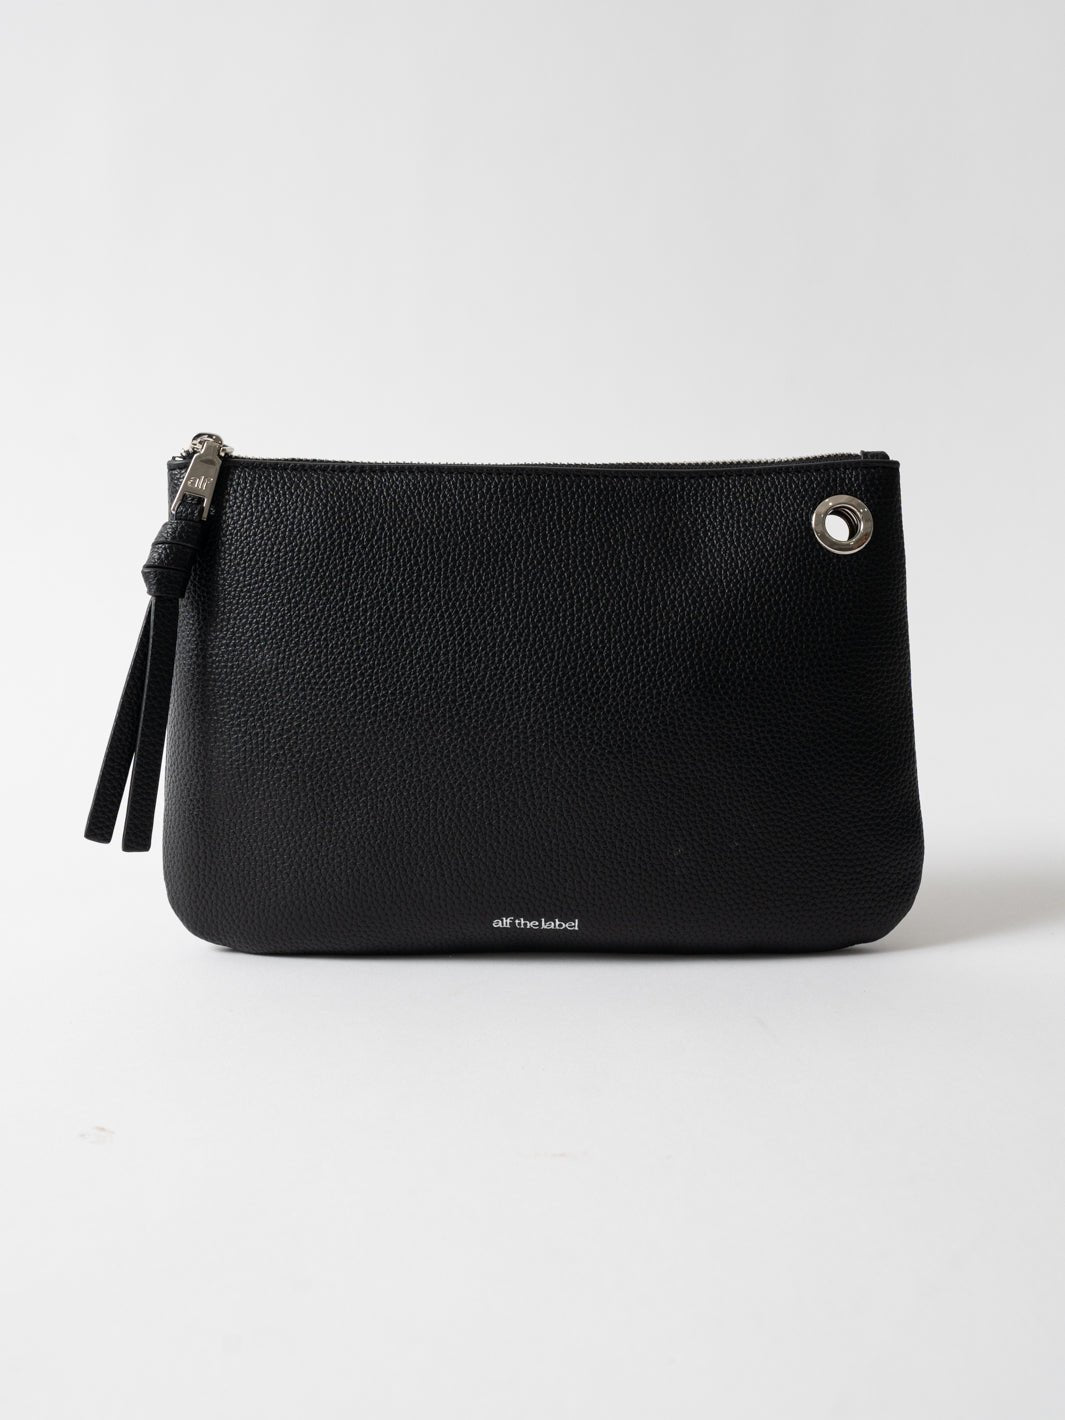 MIHA PLAIN BAG- Tan, vegan leather — KESA + KONC Designer handbags Australia  | Vegan leather shoulder bag, Bags, Vegan leather